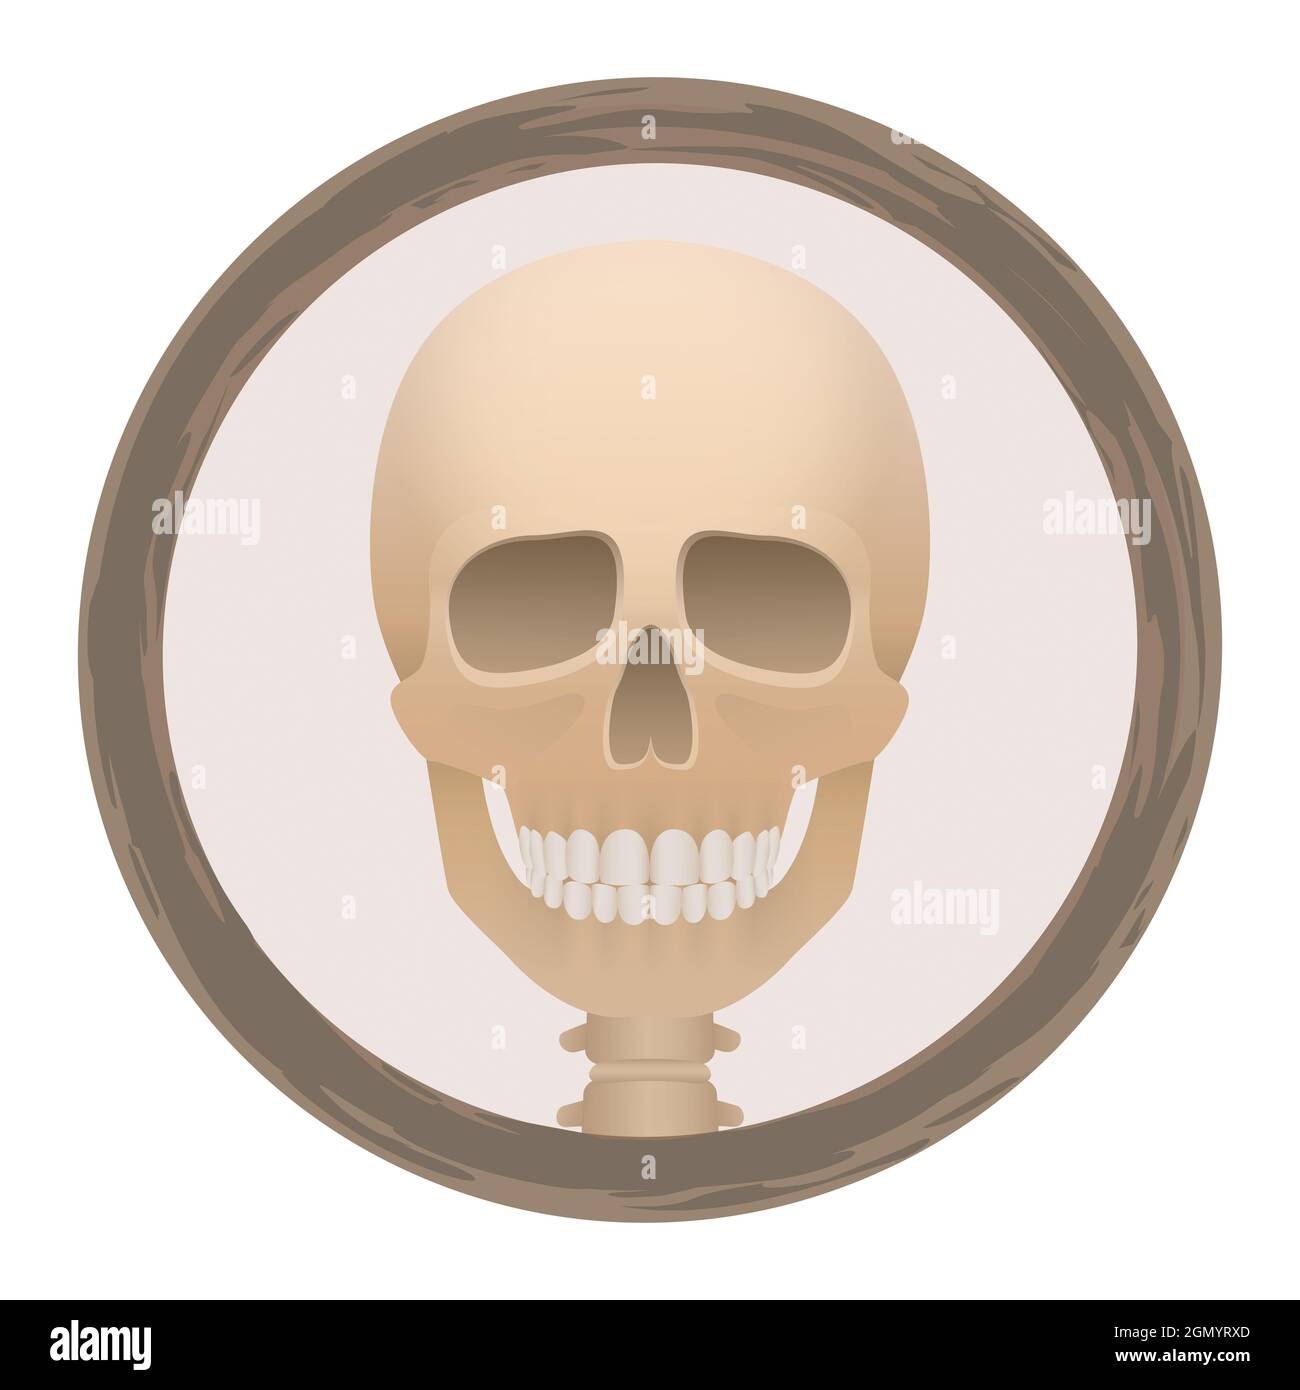 El logotipo de la cabeza del cráneo o de la muerte en un marco redondo - espeluznante, espeluznante, aterrador, pero con una sonrisa amistosa - ilustración sobre fondo blanco. Foto de stock